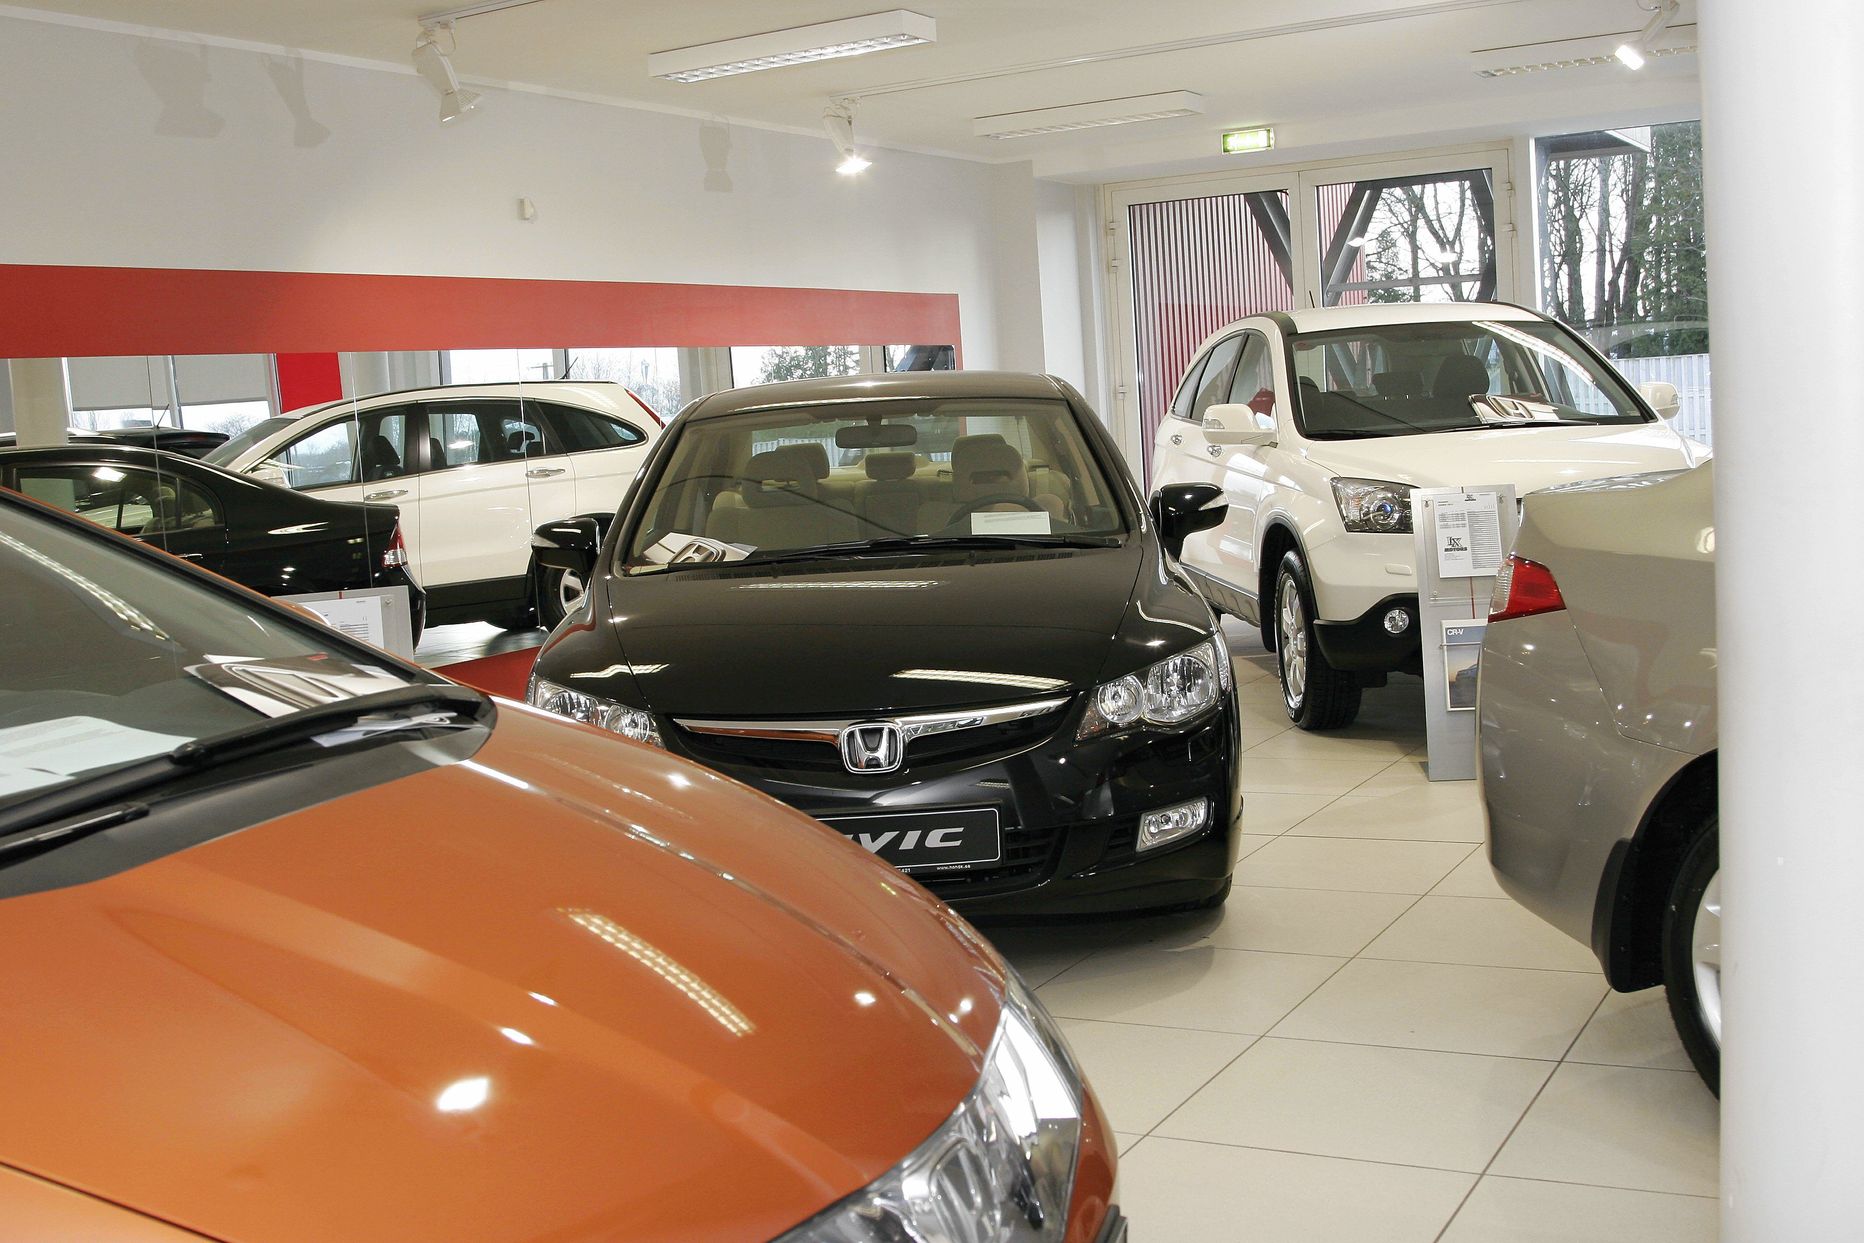 Kui lõunanaabrid eelistavad sõidukeid osta müügiplatsilt, siis Eestis käiakse autopoes.